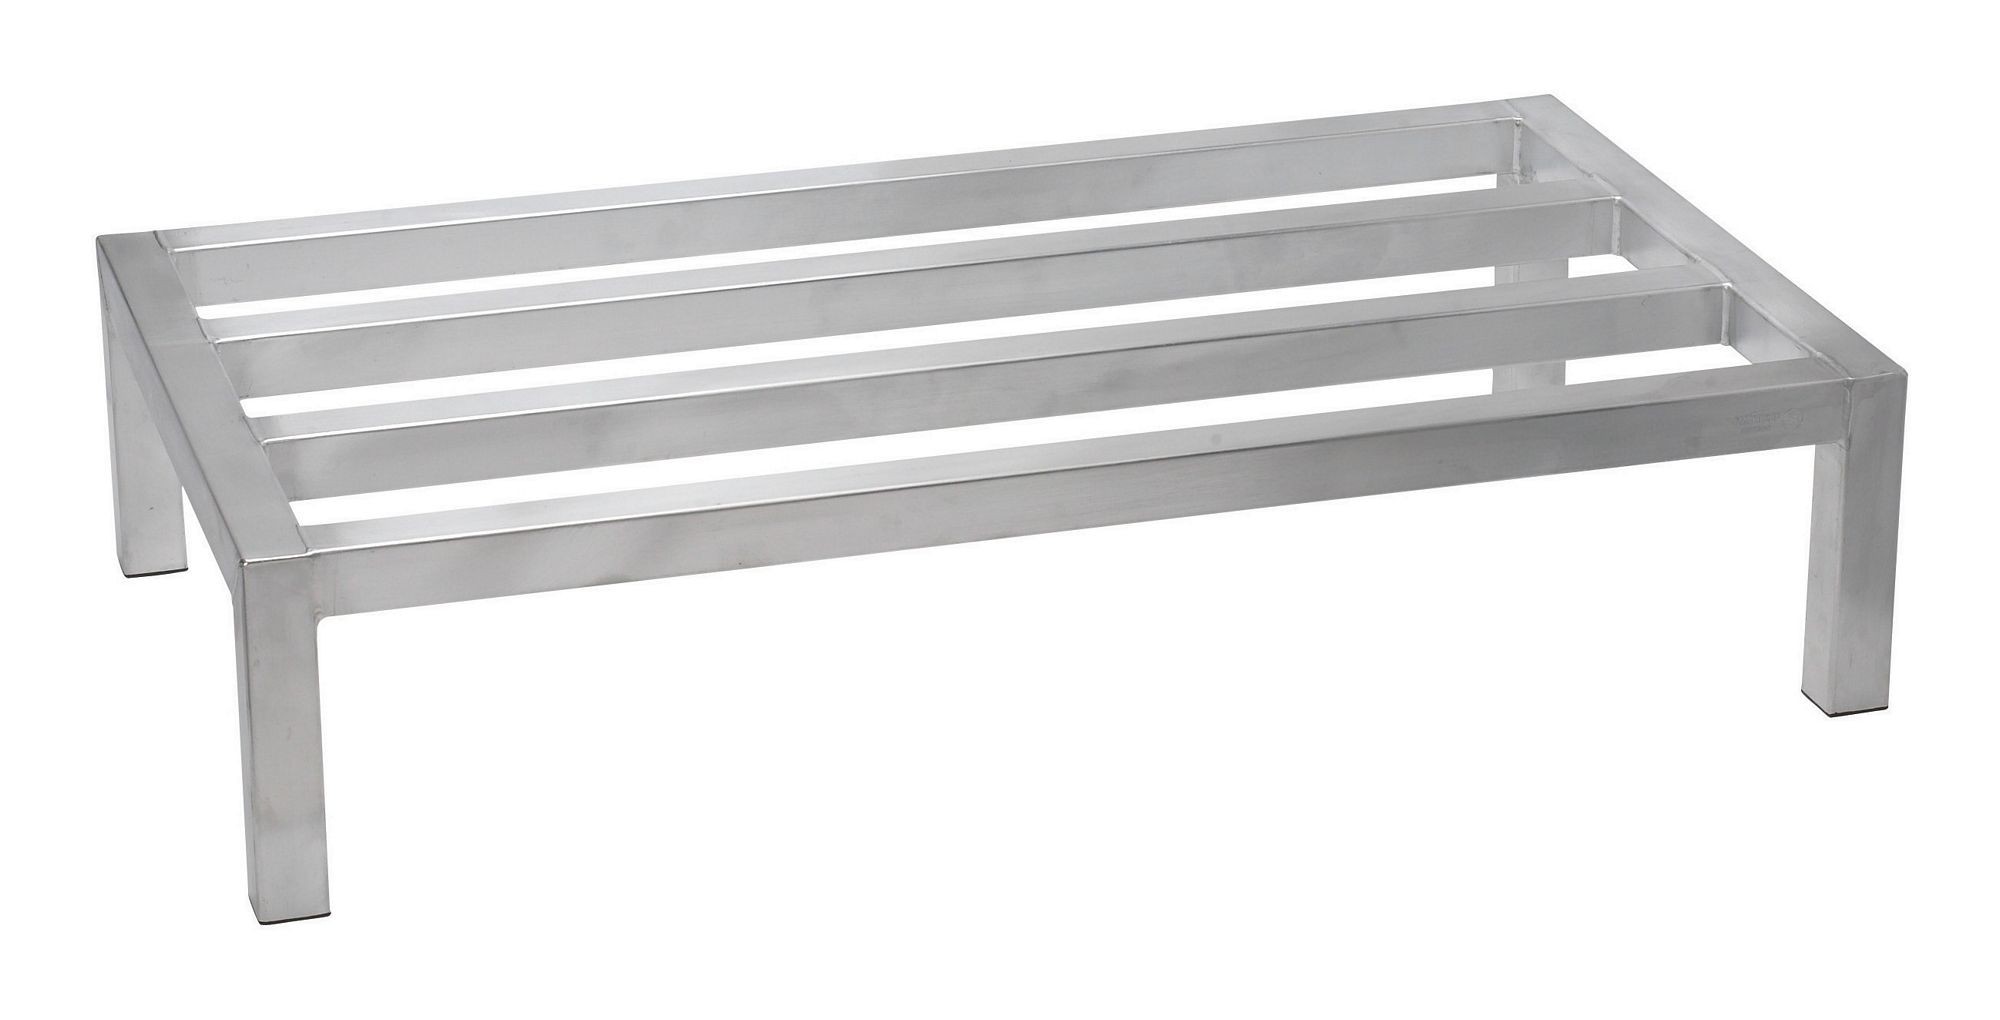 Winco ASDR-2060 Aluminum Dunnage Rack, 20" x 60" x 8"